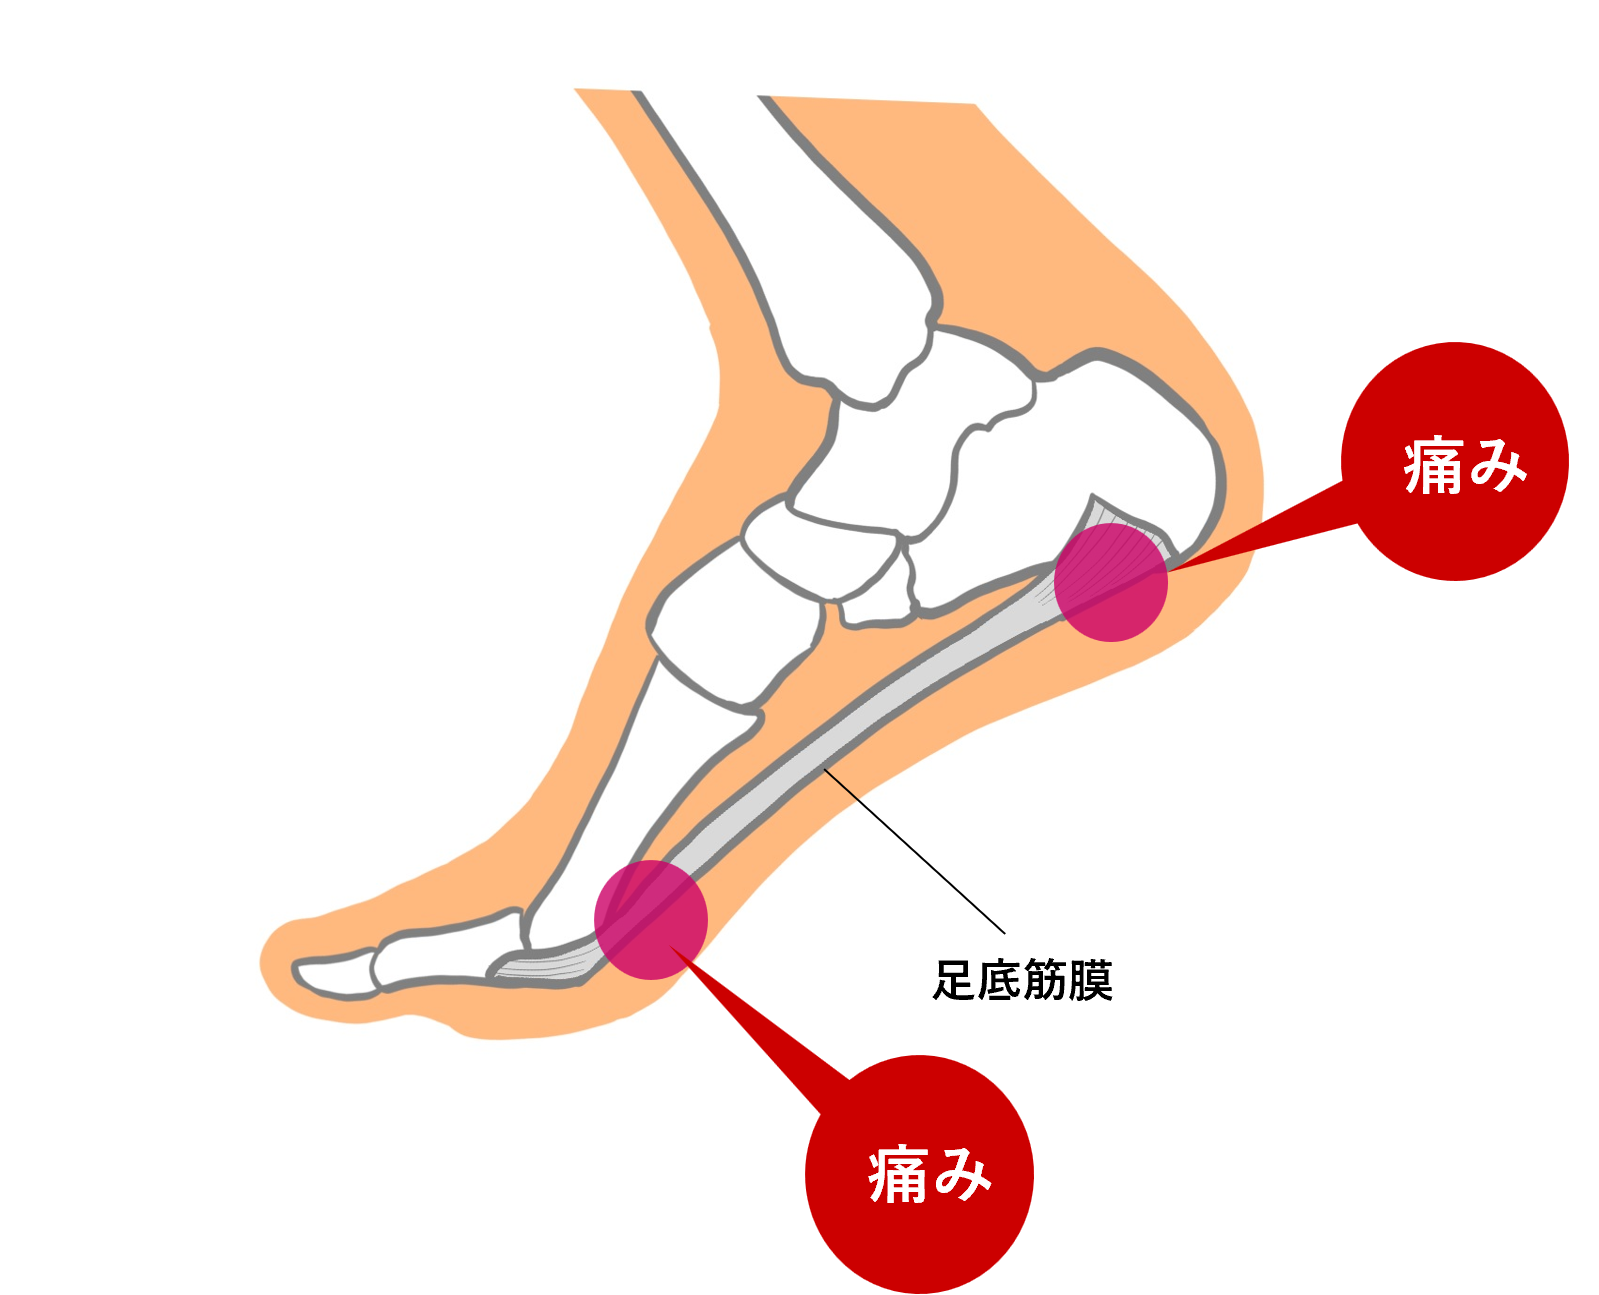 足底筋膜炎4招改善！症狀、治療和復健全圖解 | 腳跟痛 | 足底筋膜炎復健 | 足底筋膜炎治療 | 大紀元